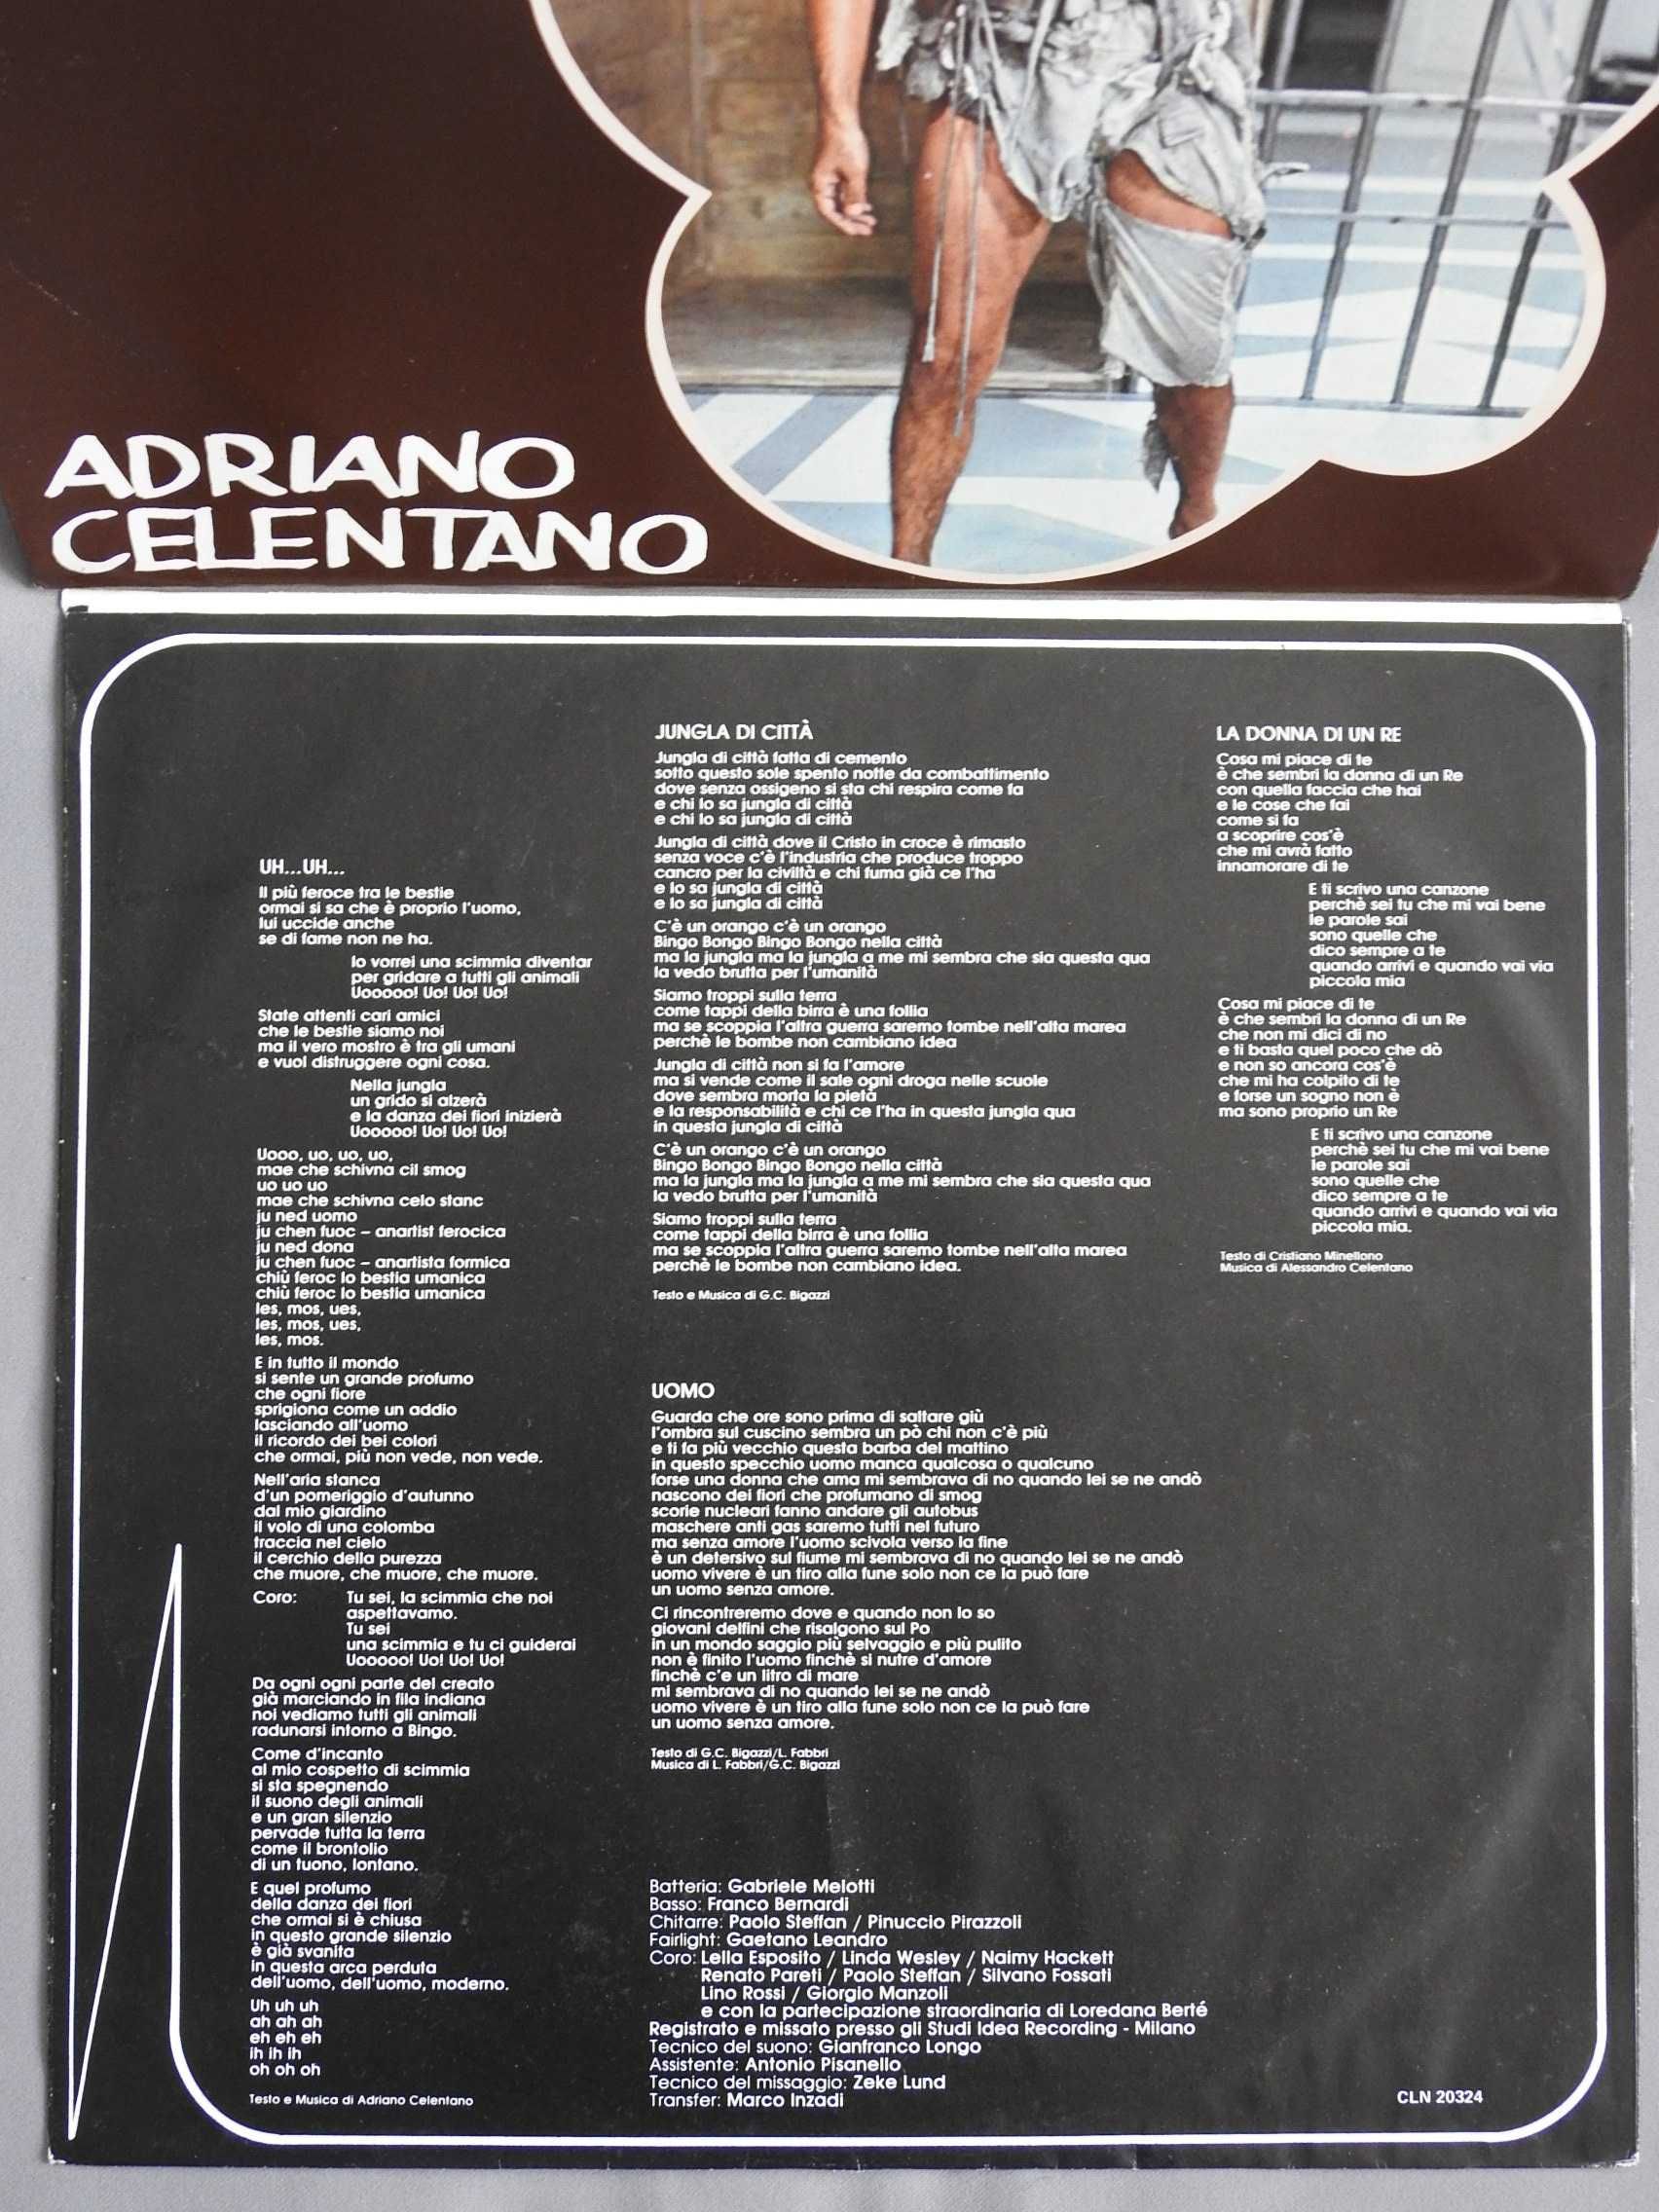 Adriano Celentano Uh…Uh… LP 1982 Италия пластинка EX Bingo Bongo film